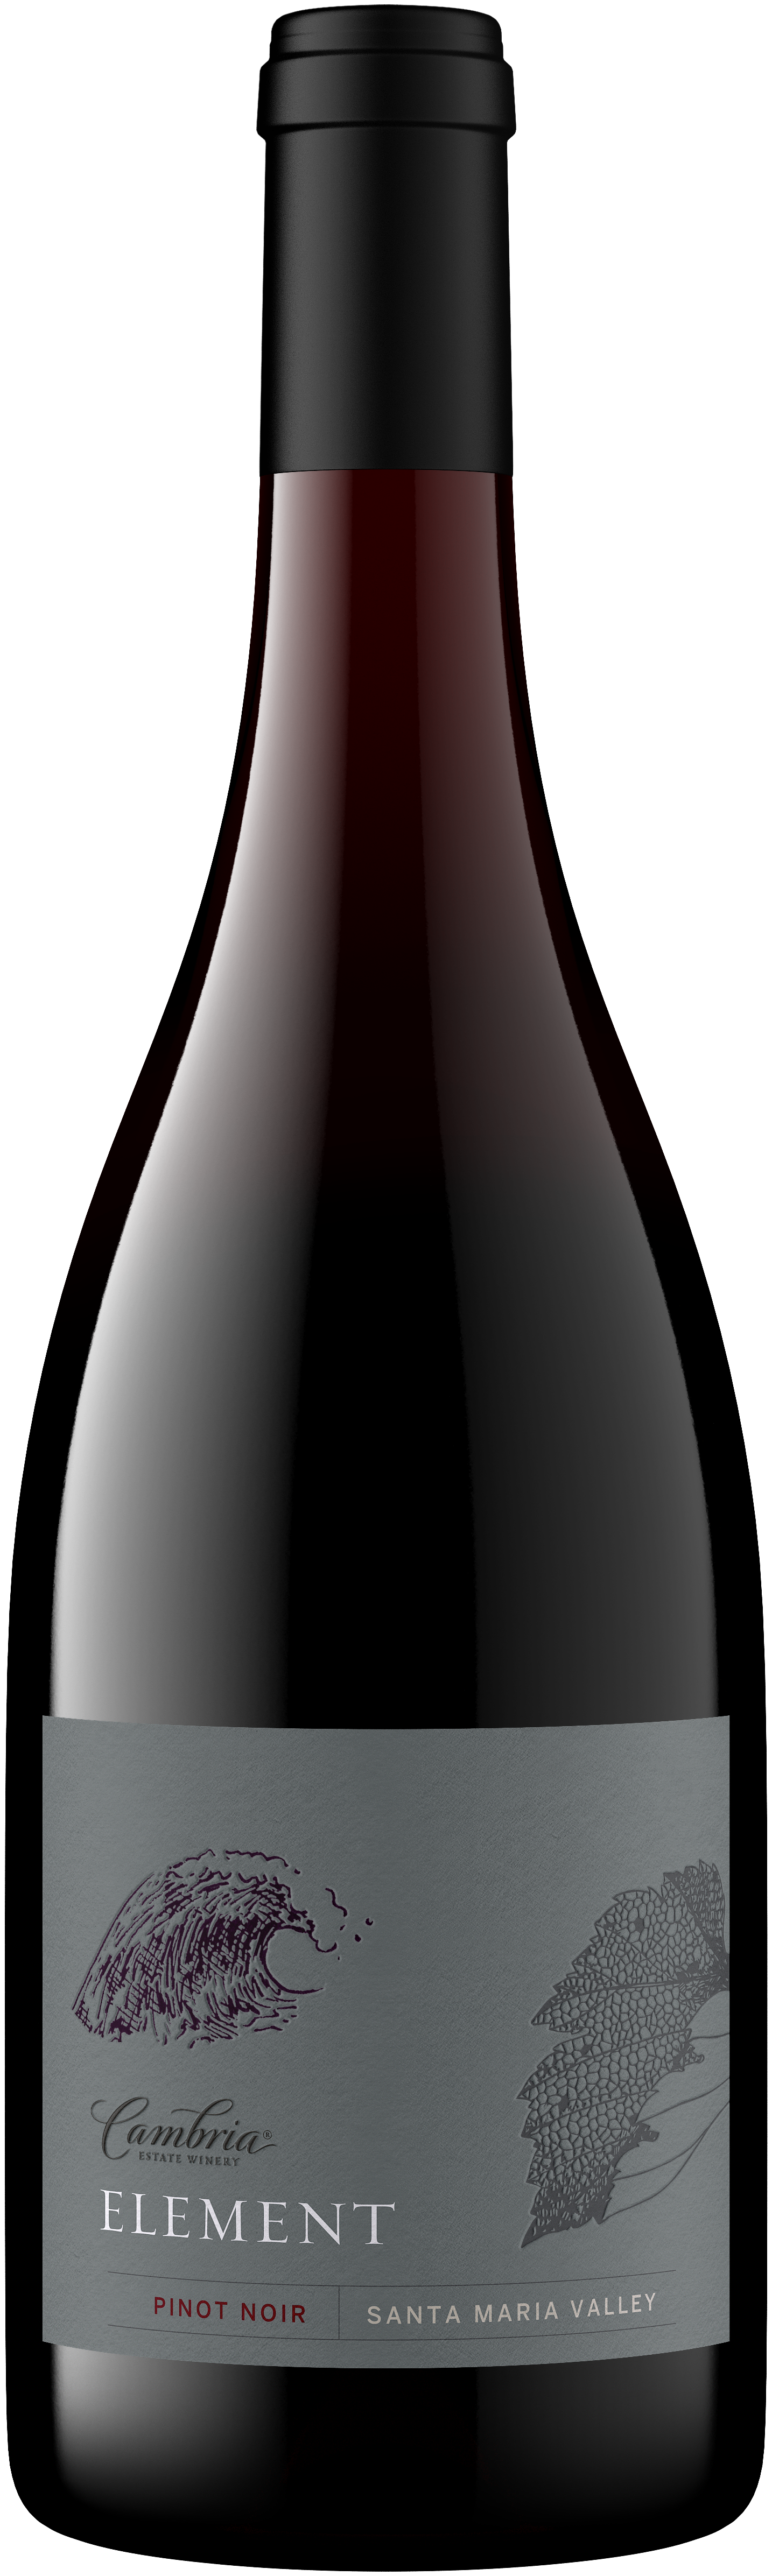 Element Pinot Noir